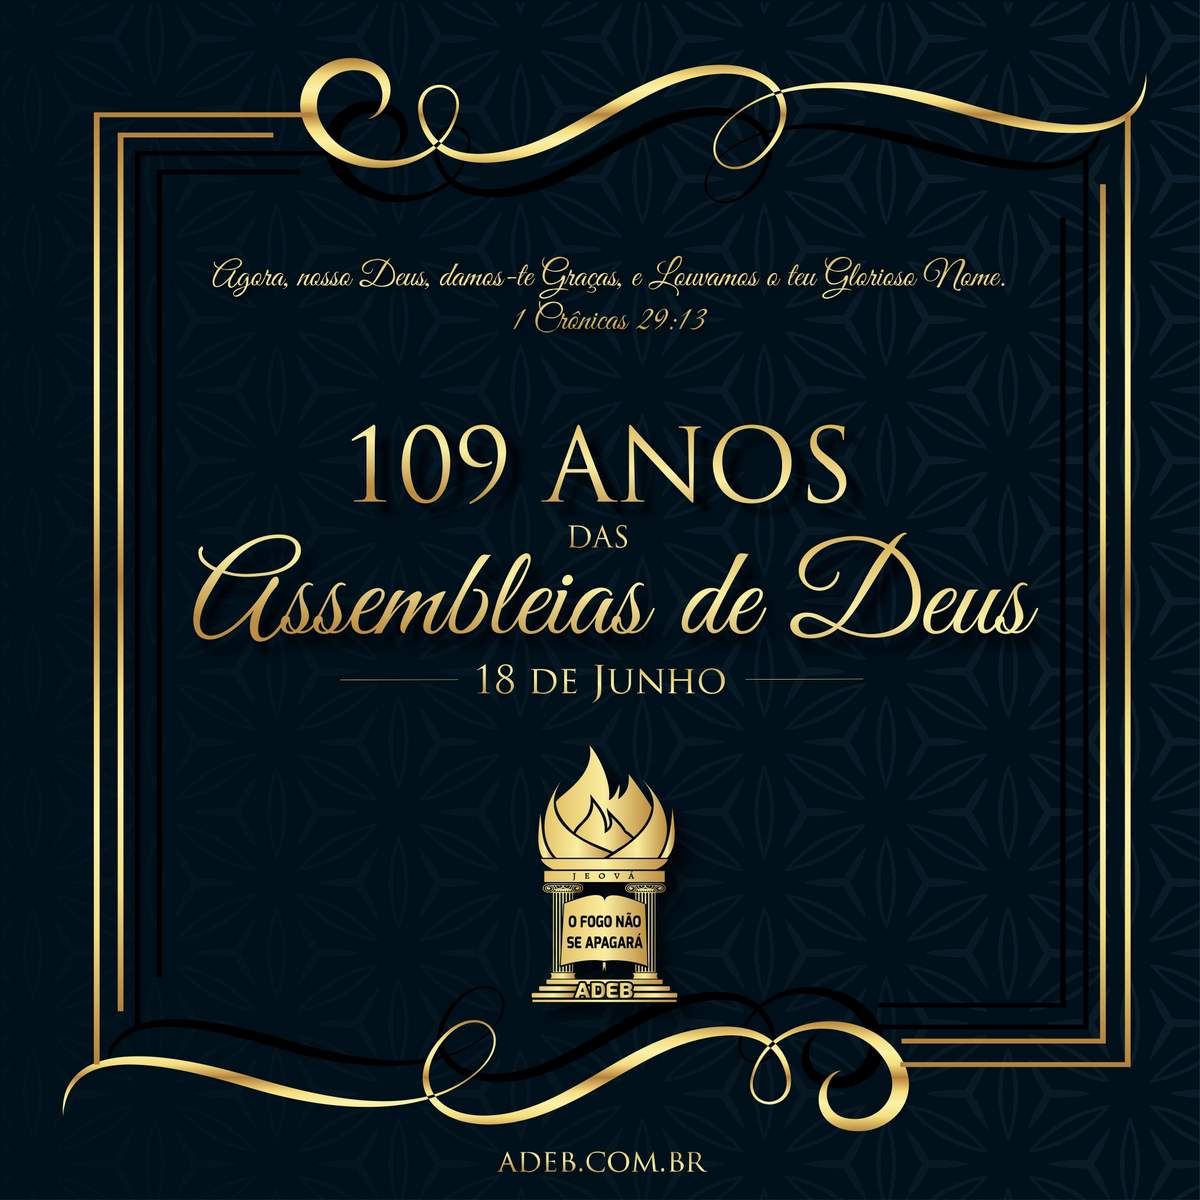 109 anos das Assembleias de Deus no Brasil